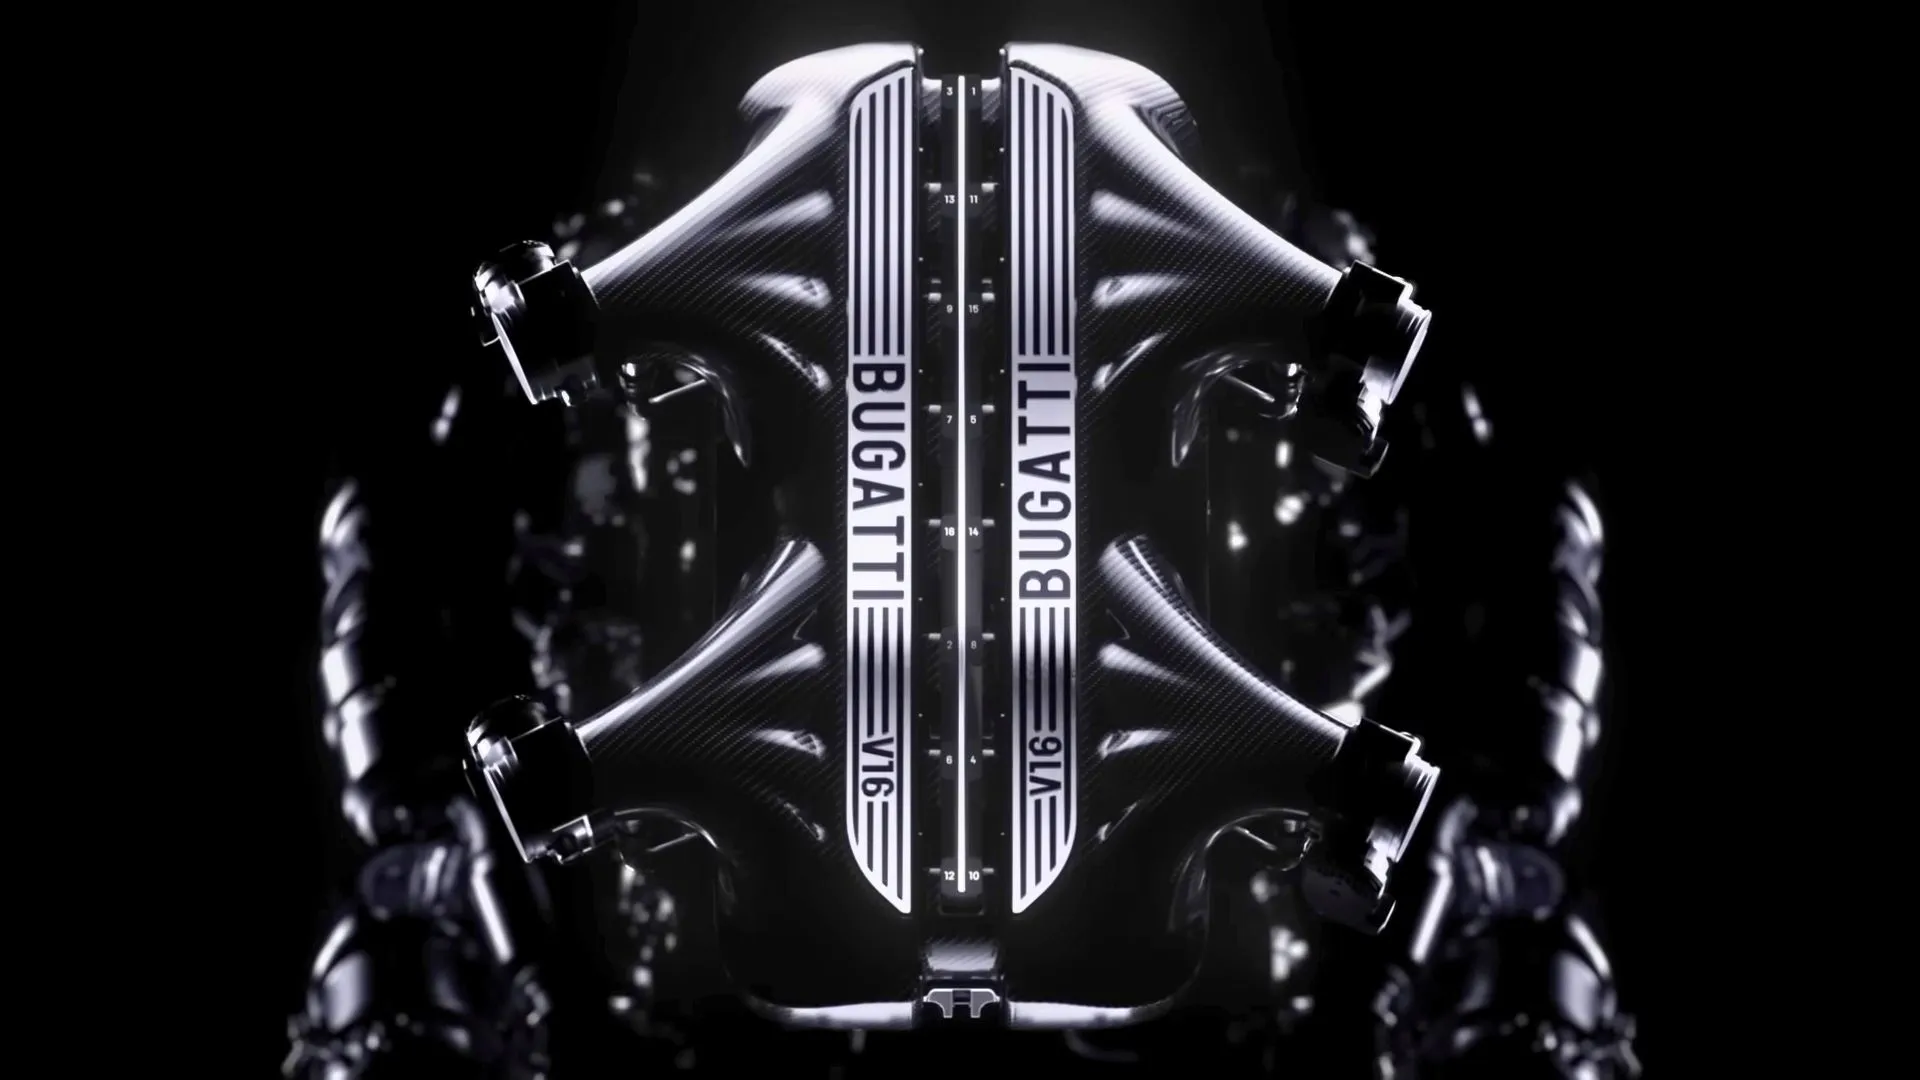 Bugatti ha annunciato un nuovo motore ibrido V16 che permette all'auto di raggiungere una velocità di 445 km/h